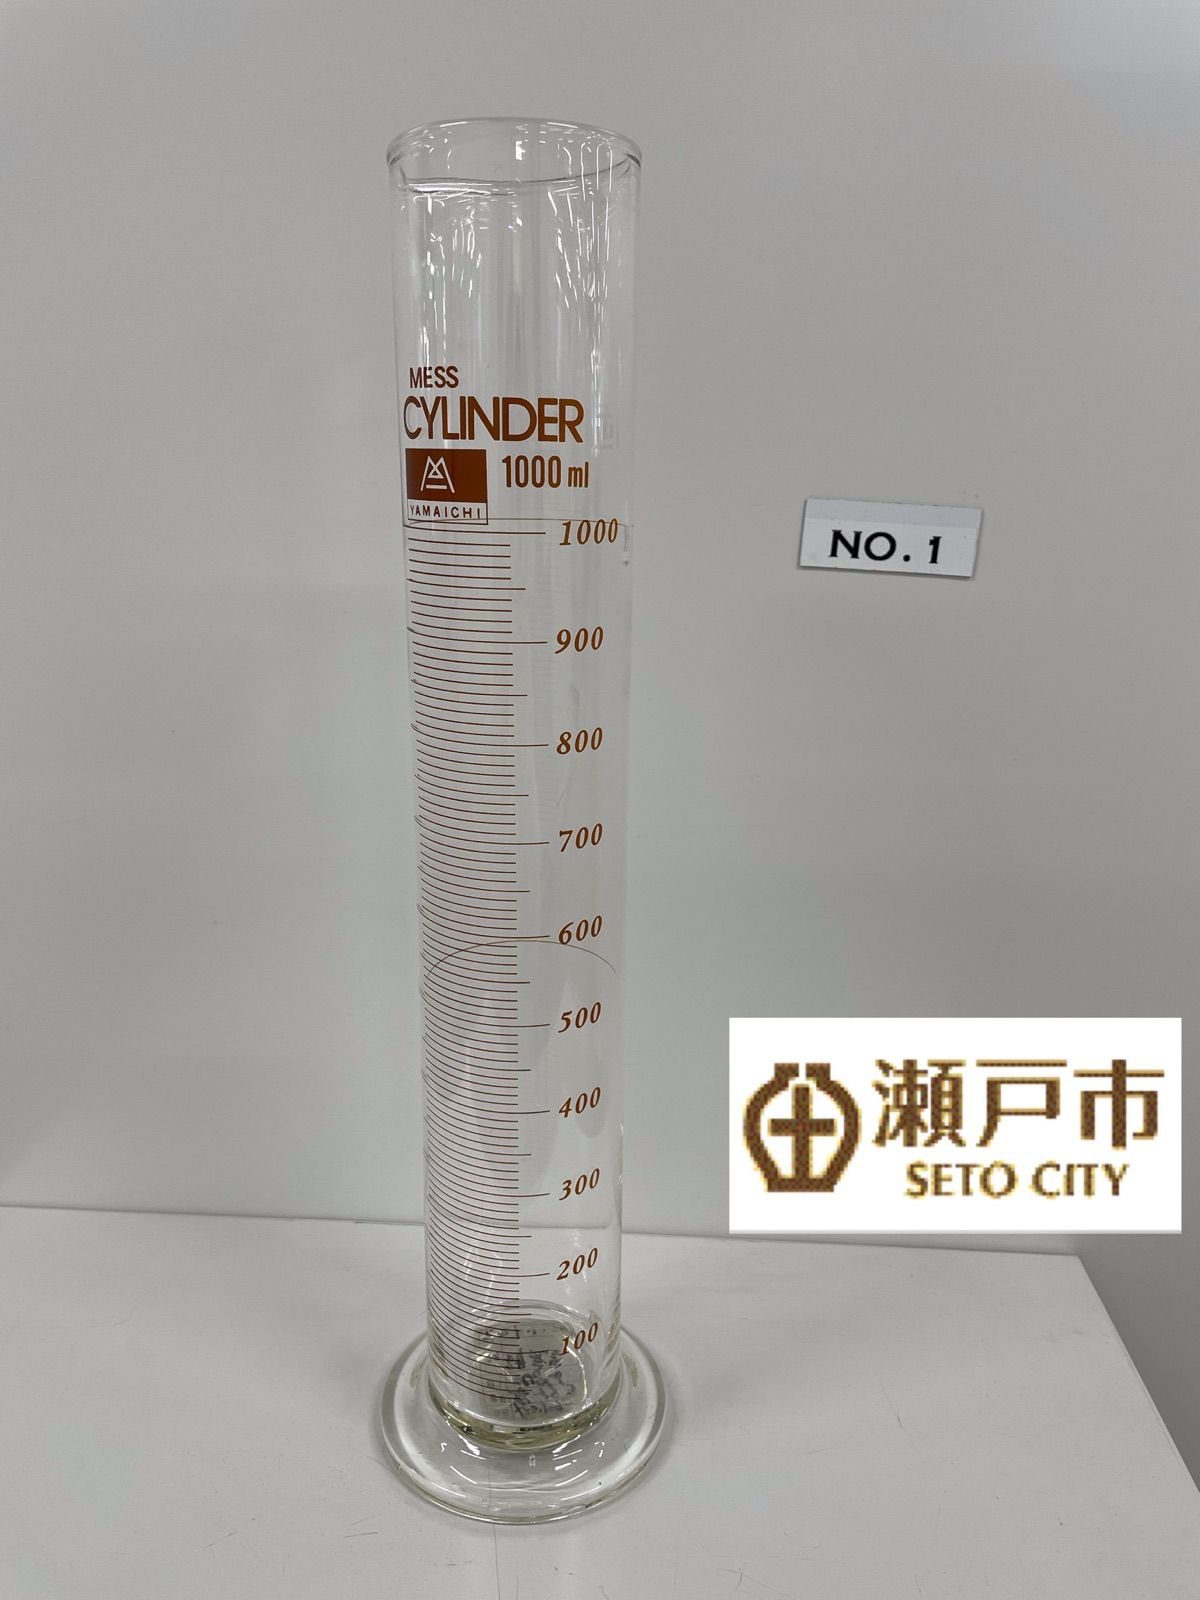 若者の大愛商品 ガラス製メスシリンダー1000ml